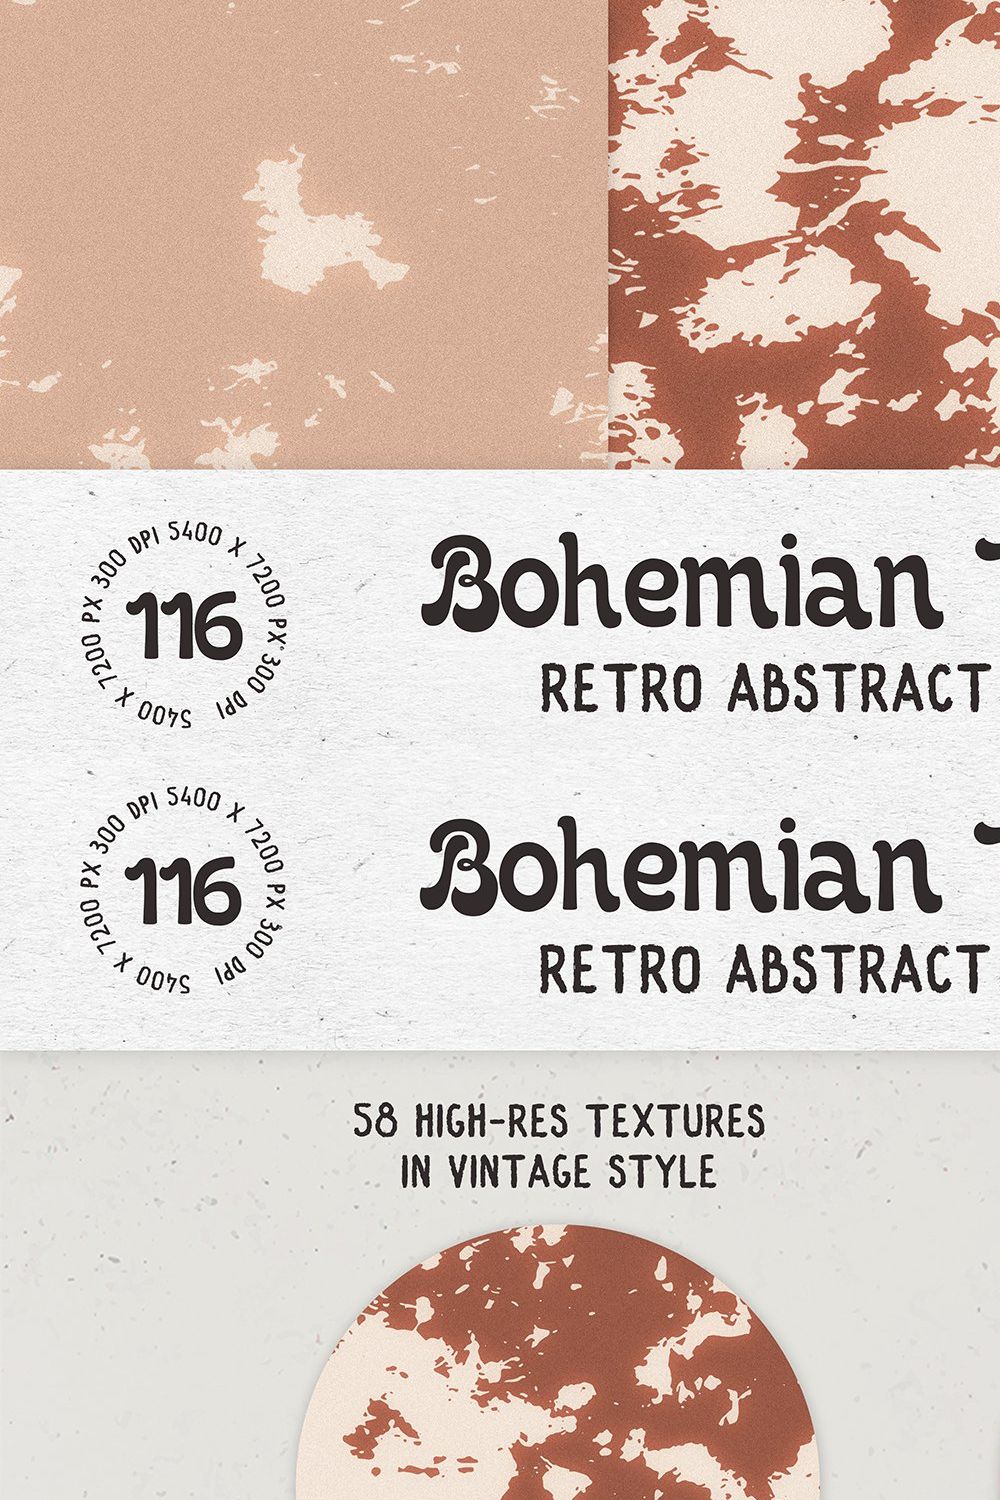 Bohemian TieDye Retro textures pinterest preview image.